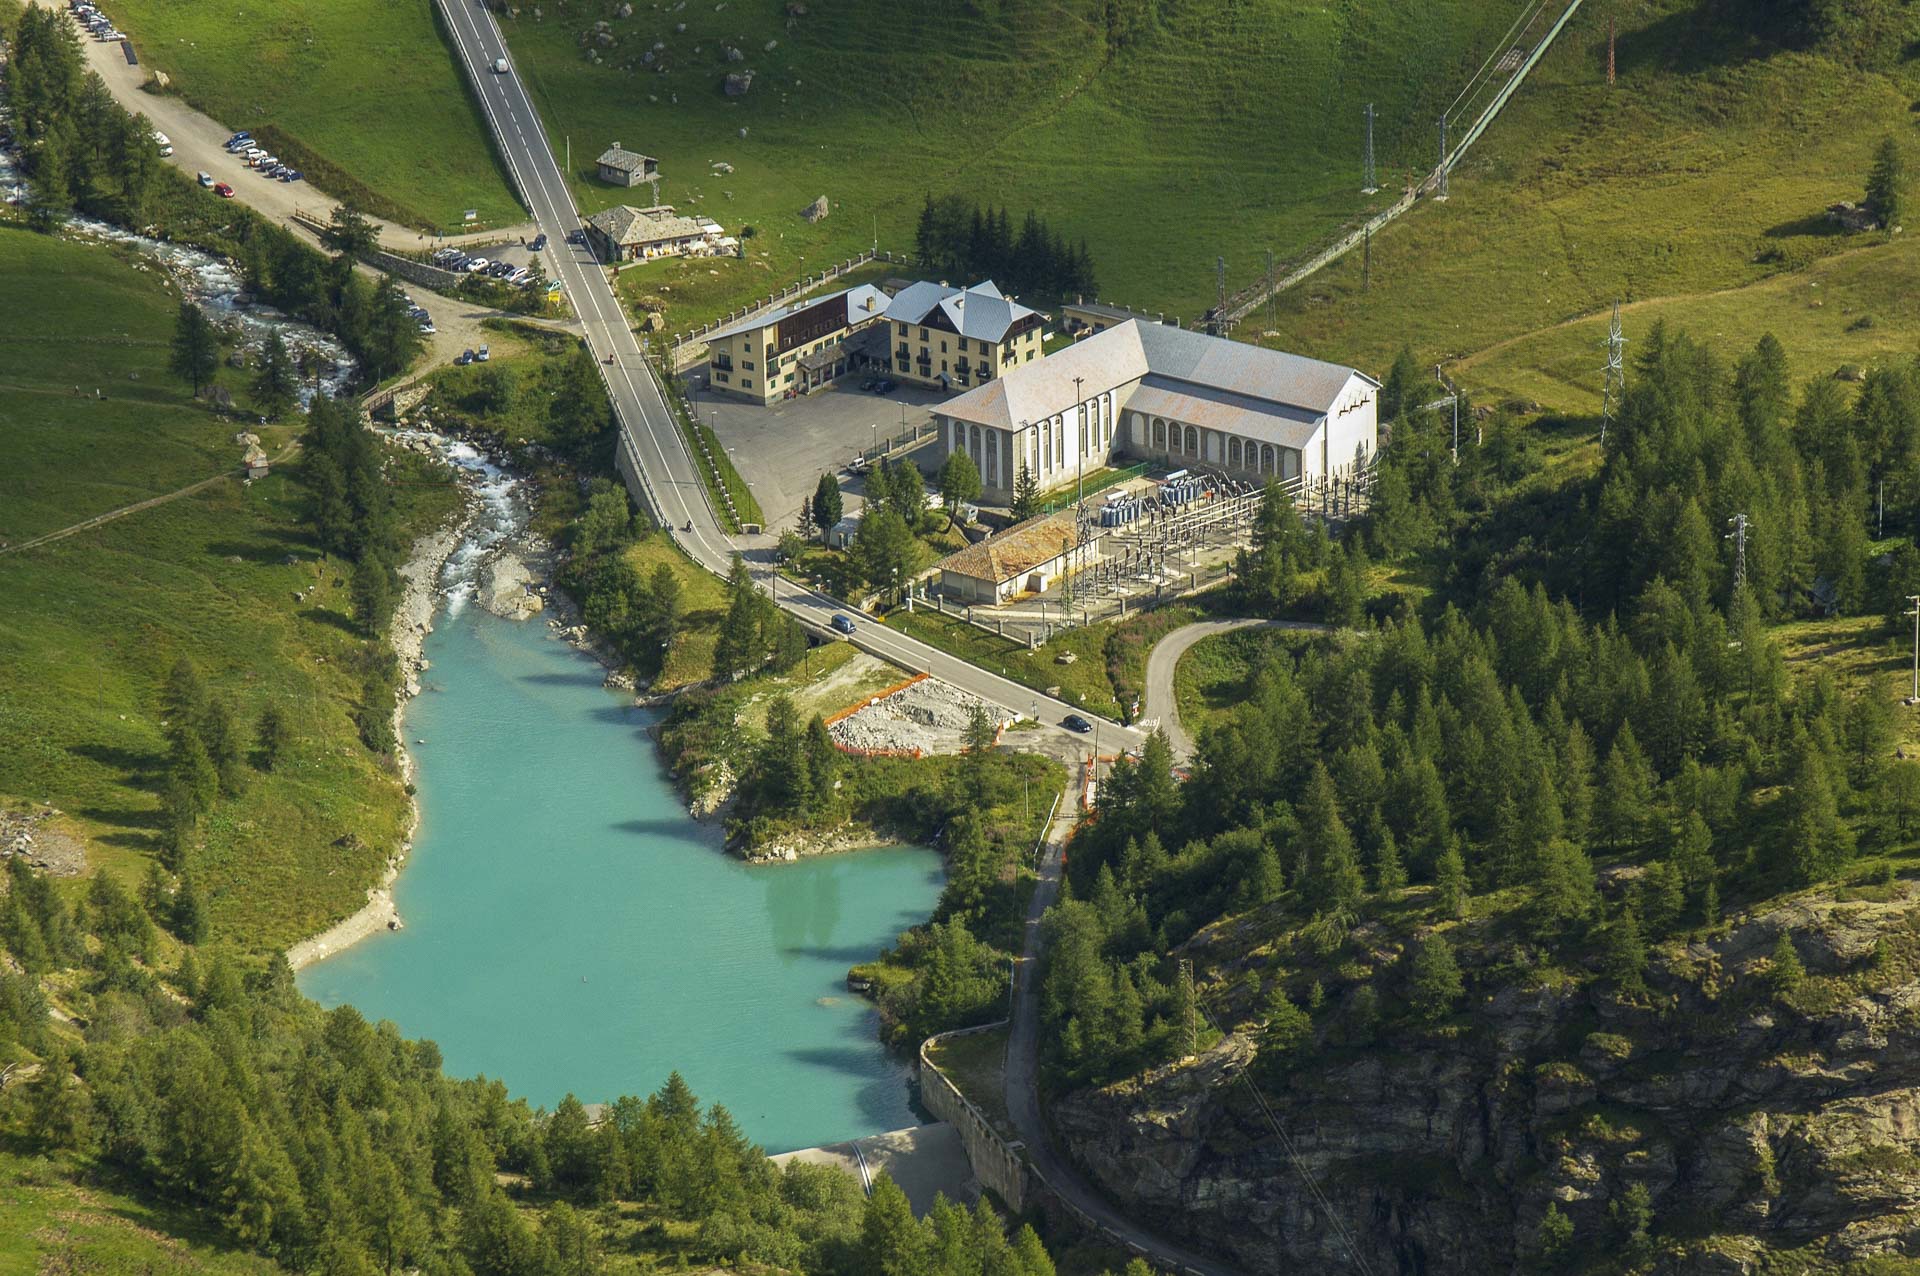 Impianto idroelettrico di perreres produzione energia rinnovabile con acqua